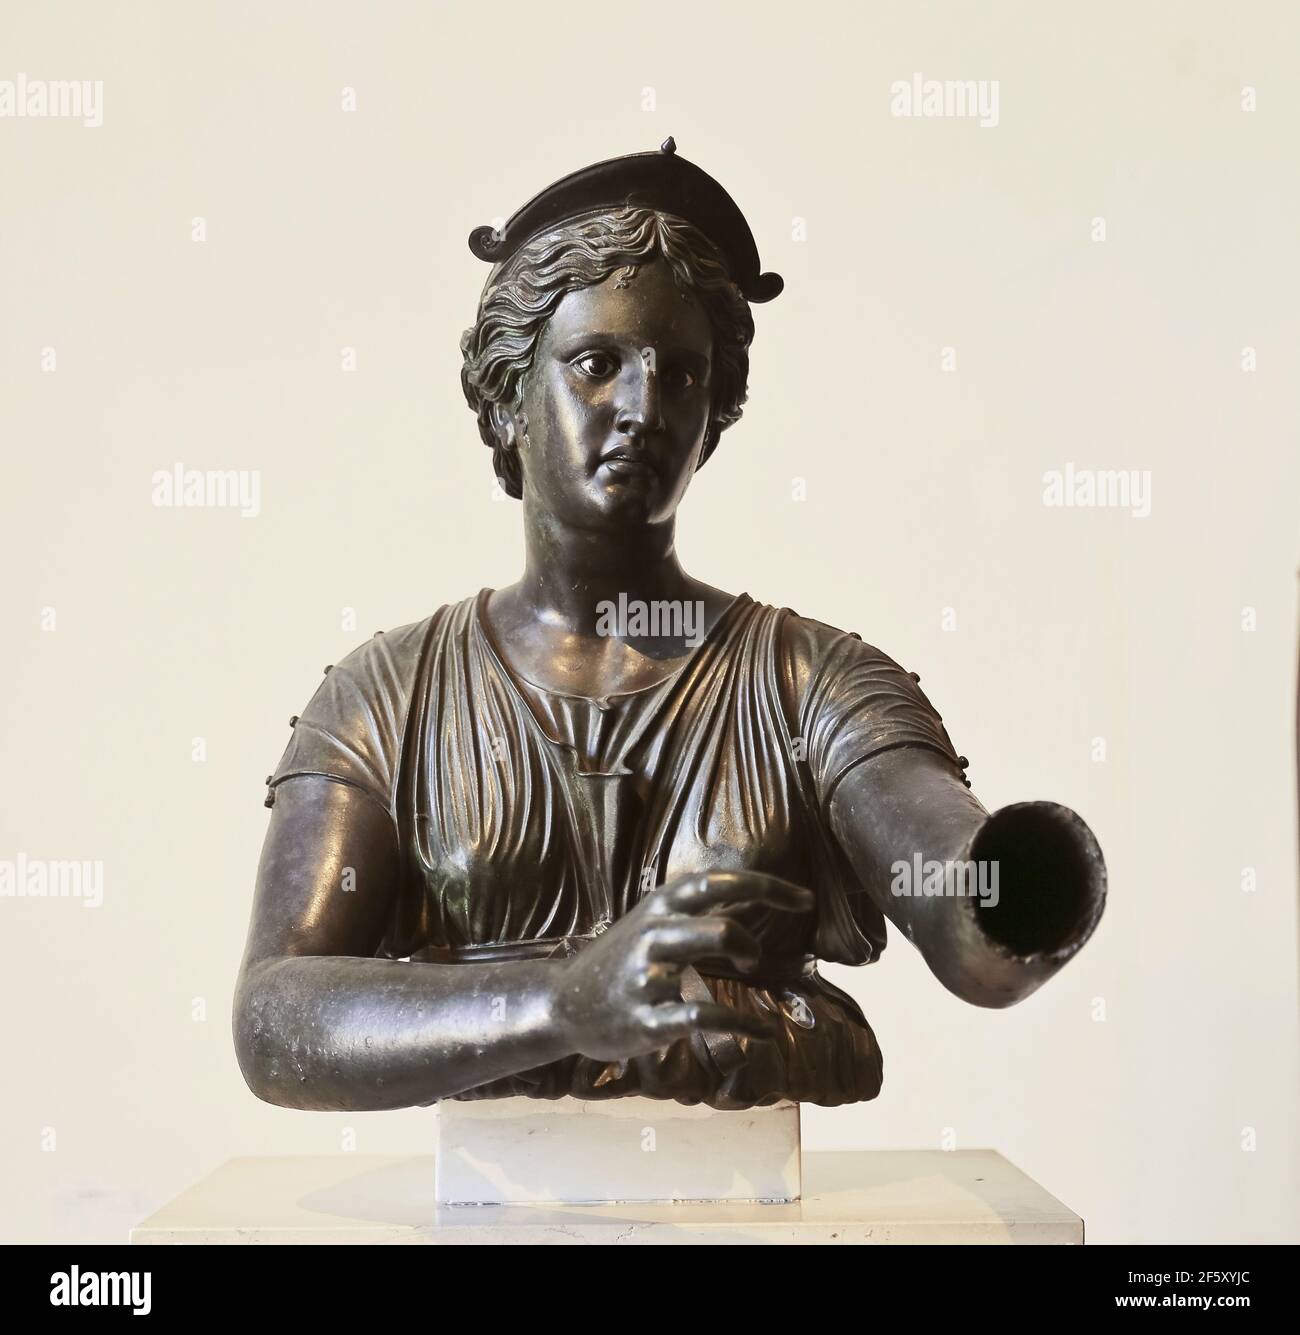 Busto di Diana (Artemis). secondo cent. BC periodo ellenistico. Tempio di Apollo, Pompei. Statua in bronzo. Museo Archeologico di Napoli, Italia. Foto Stock